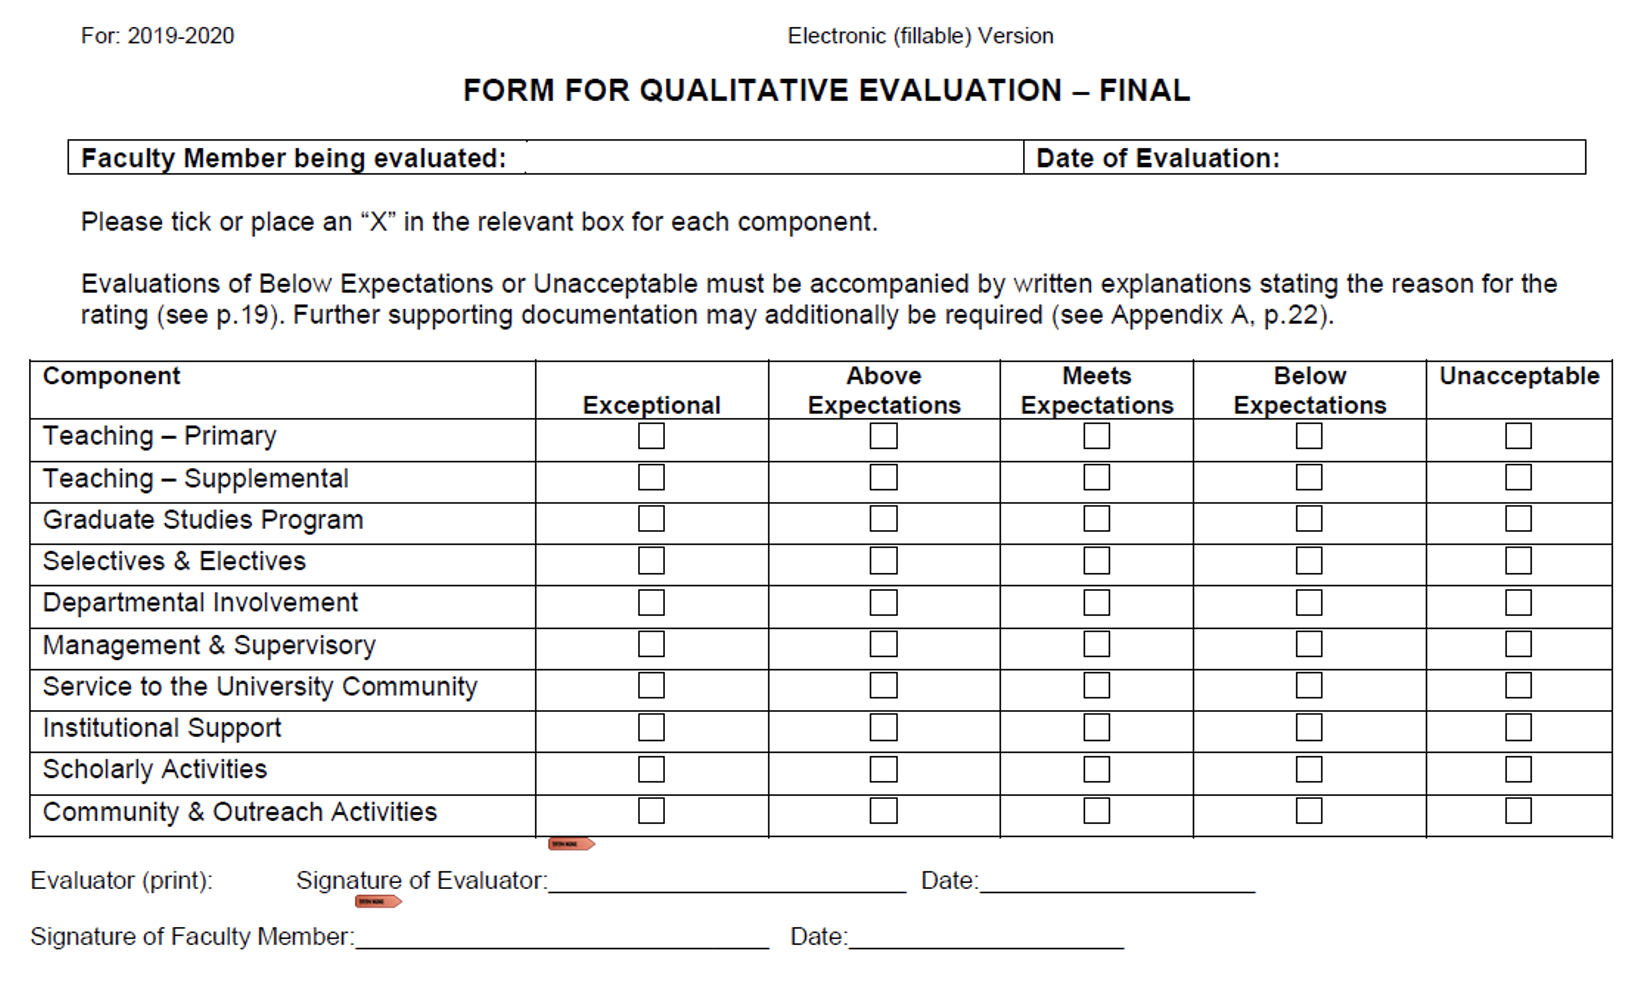 Form for Qualitative Evaluation - Final 